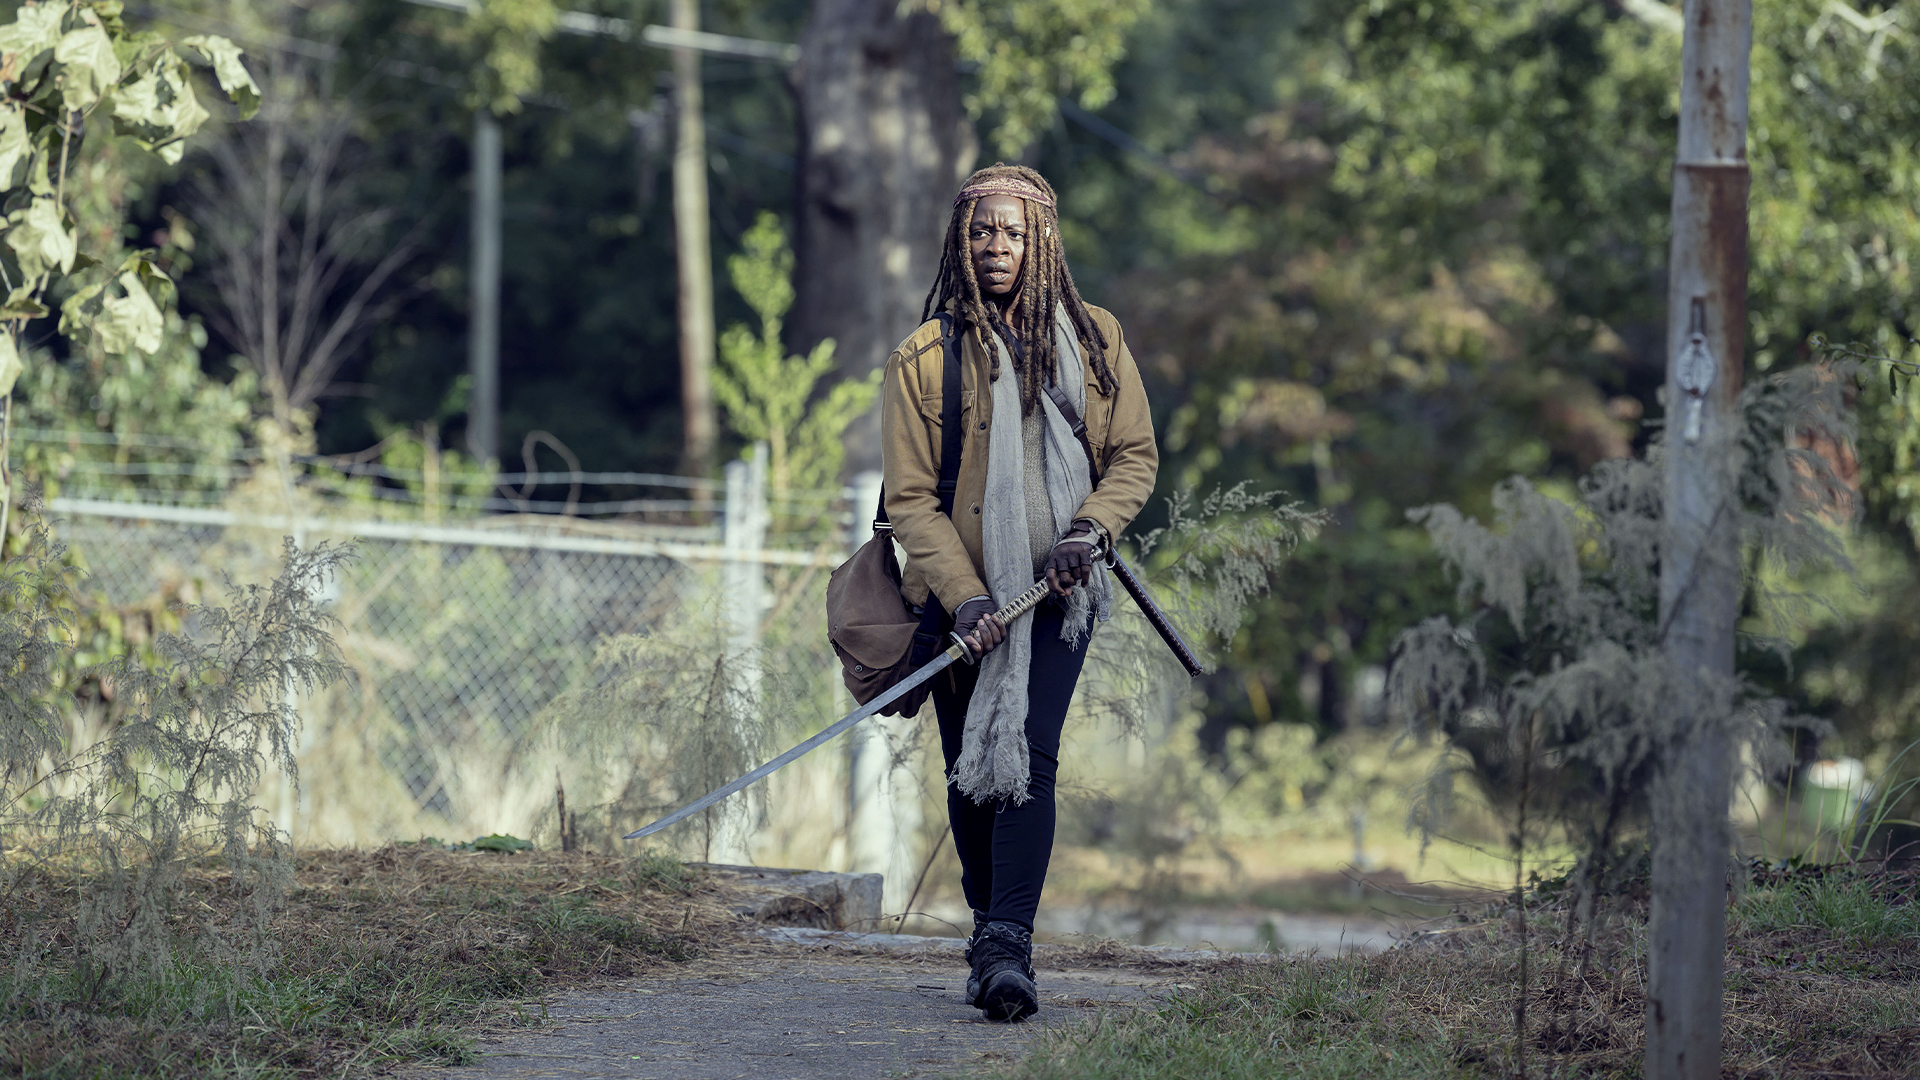 The Walking Dead: Best of Michonne Season 1 Episode 5 - Scars: Best of Michonne Edition